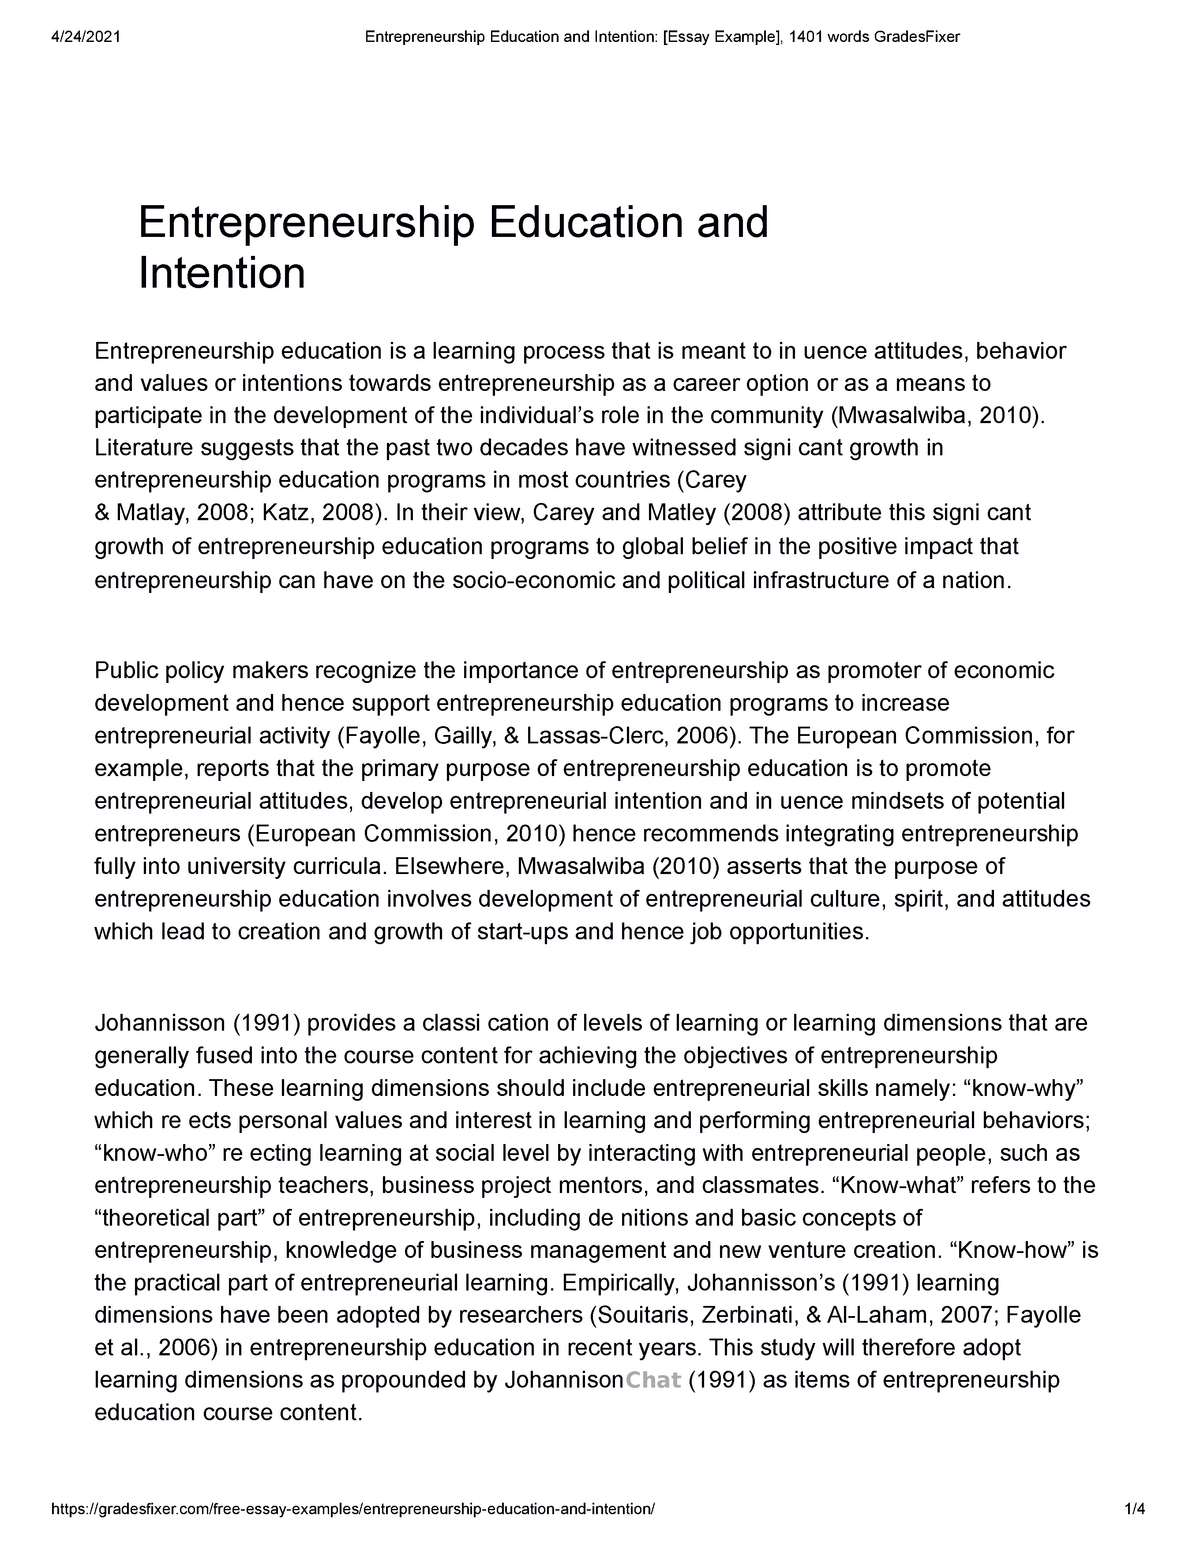 interest in entrepreneurship essay